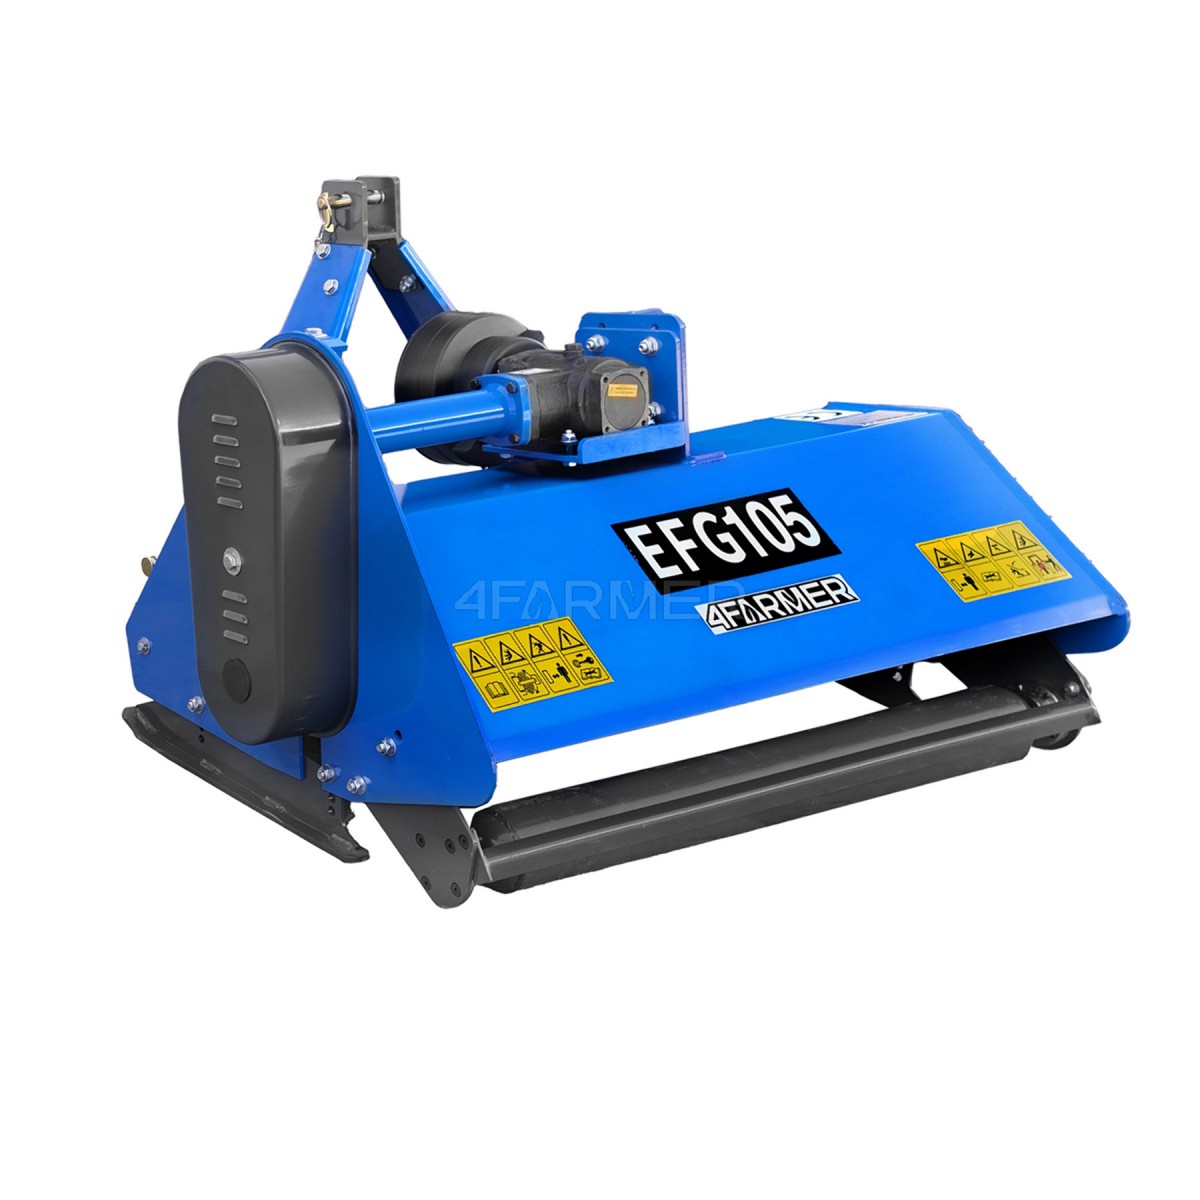 Trituradora de martillos EFG 105 4FARMER - azul